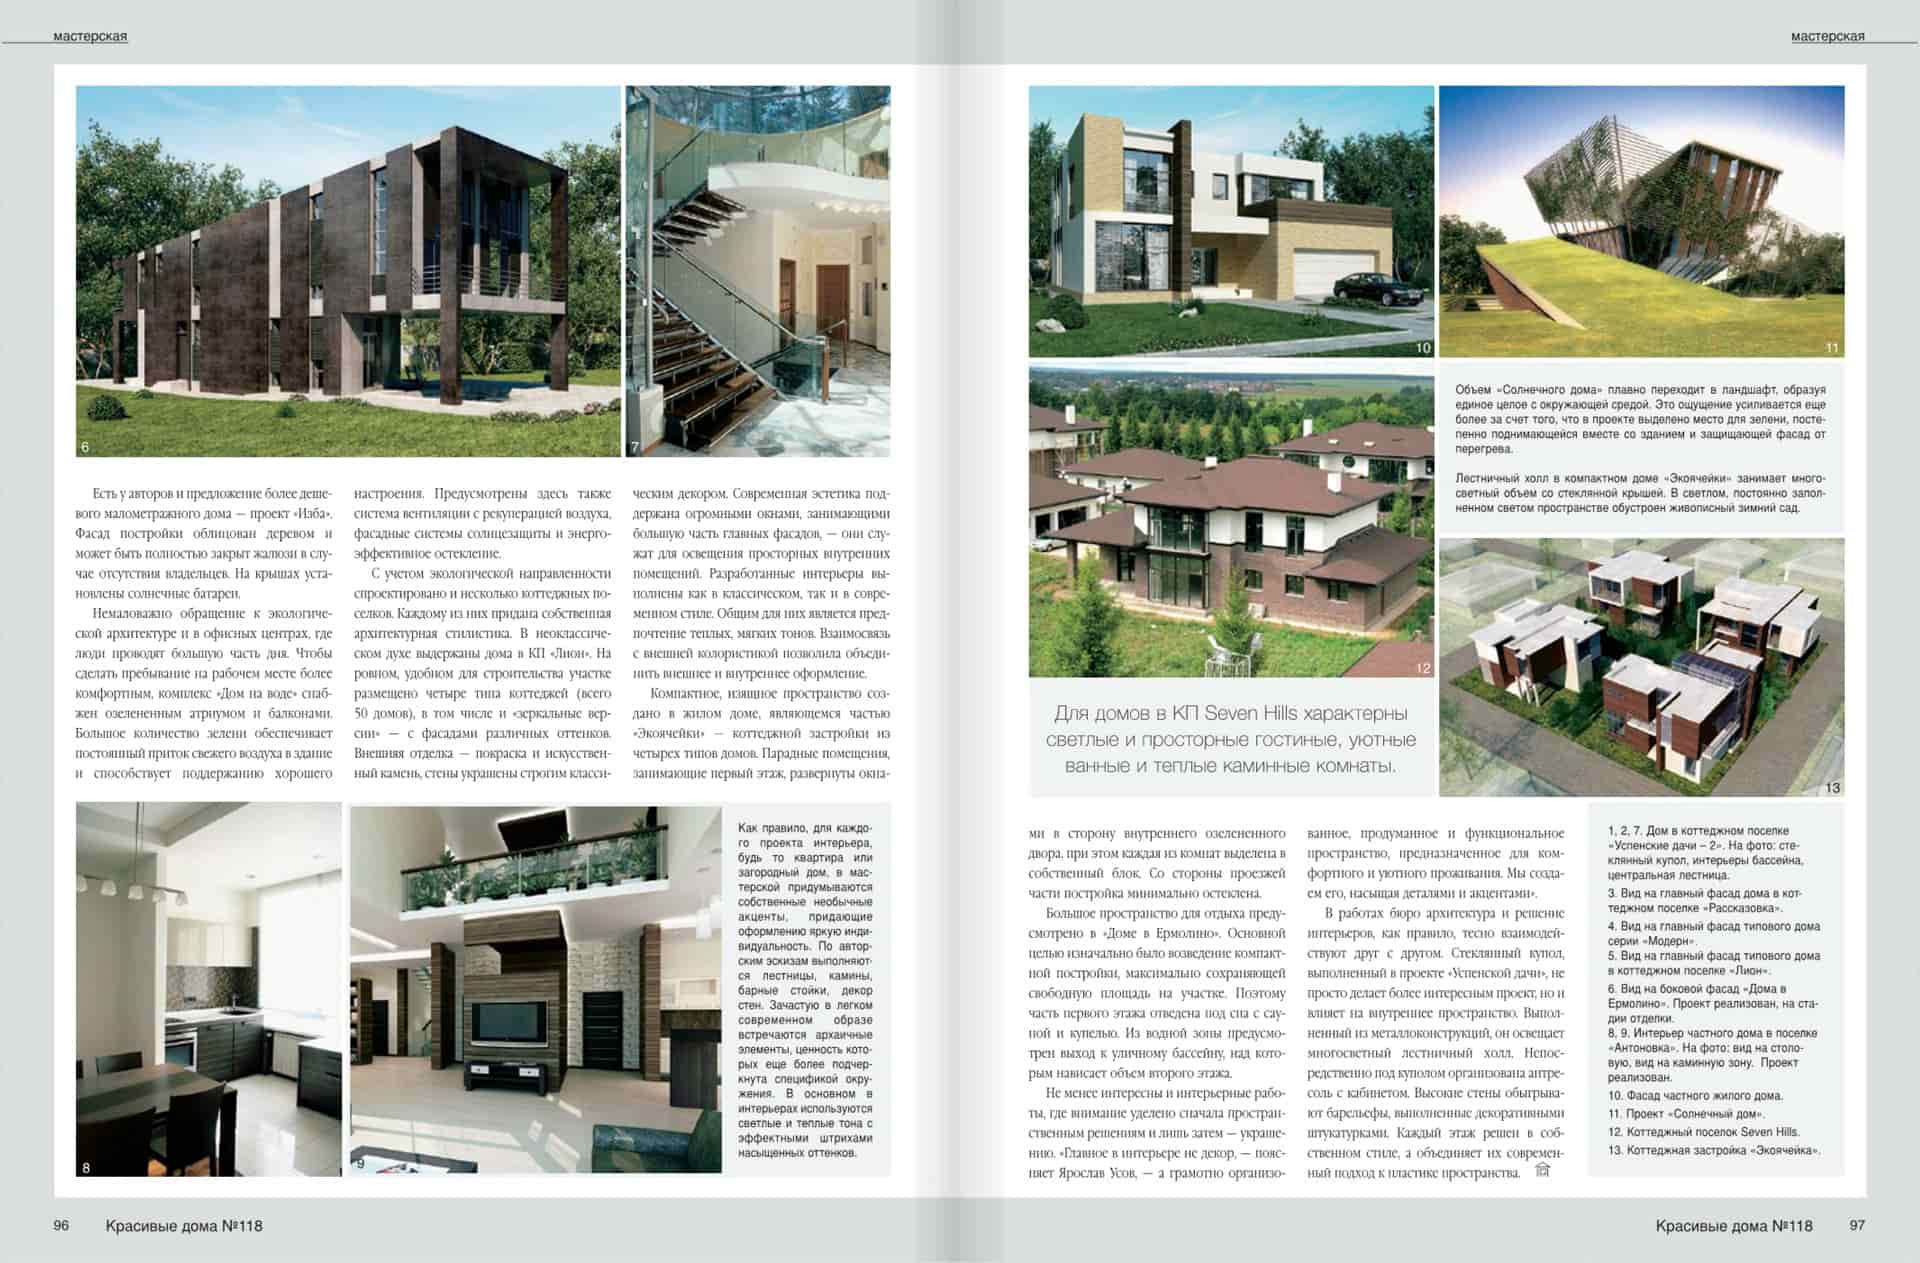 Статья о нашем архитектурном бюро, о новых проектах и постройках и общей архитектурной концепции нашего стиля